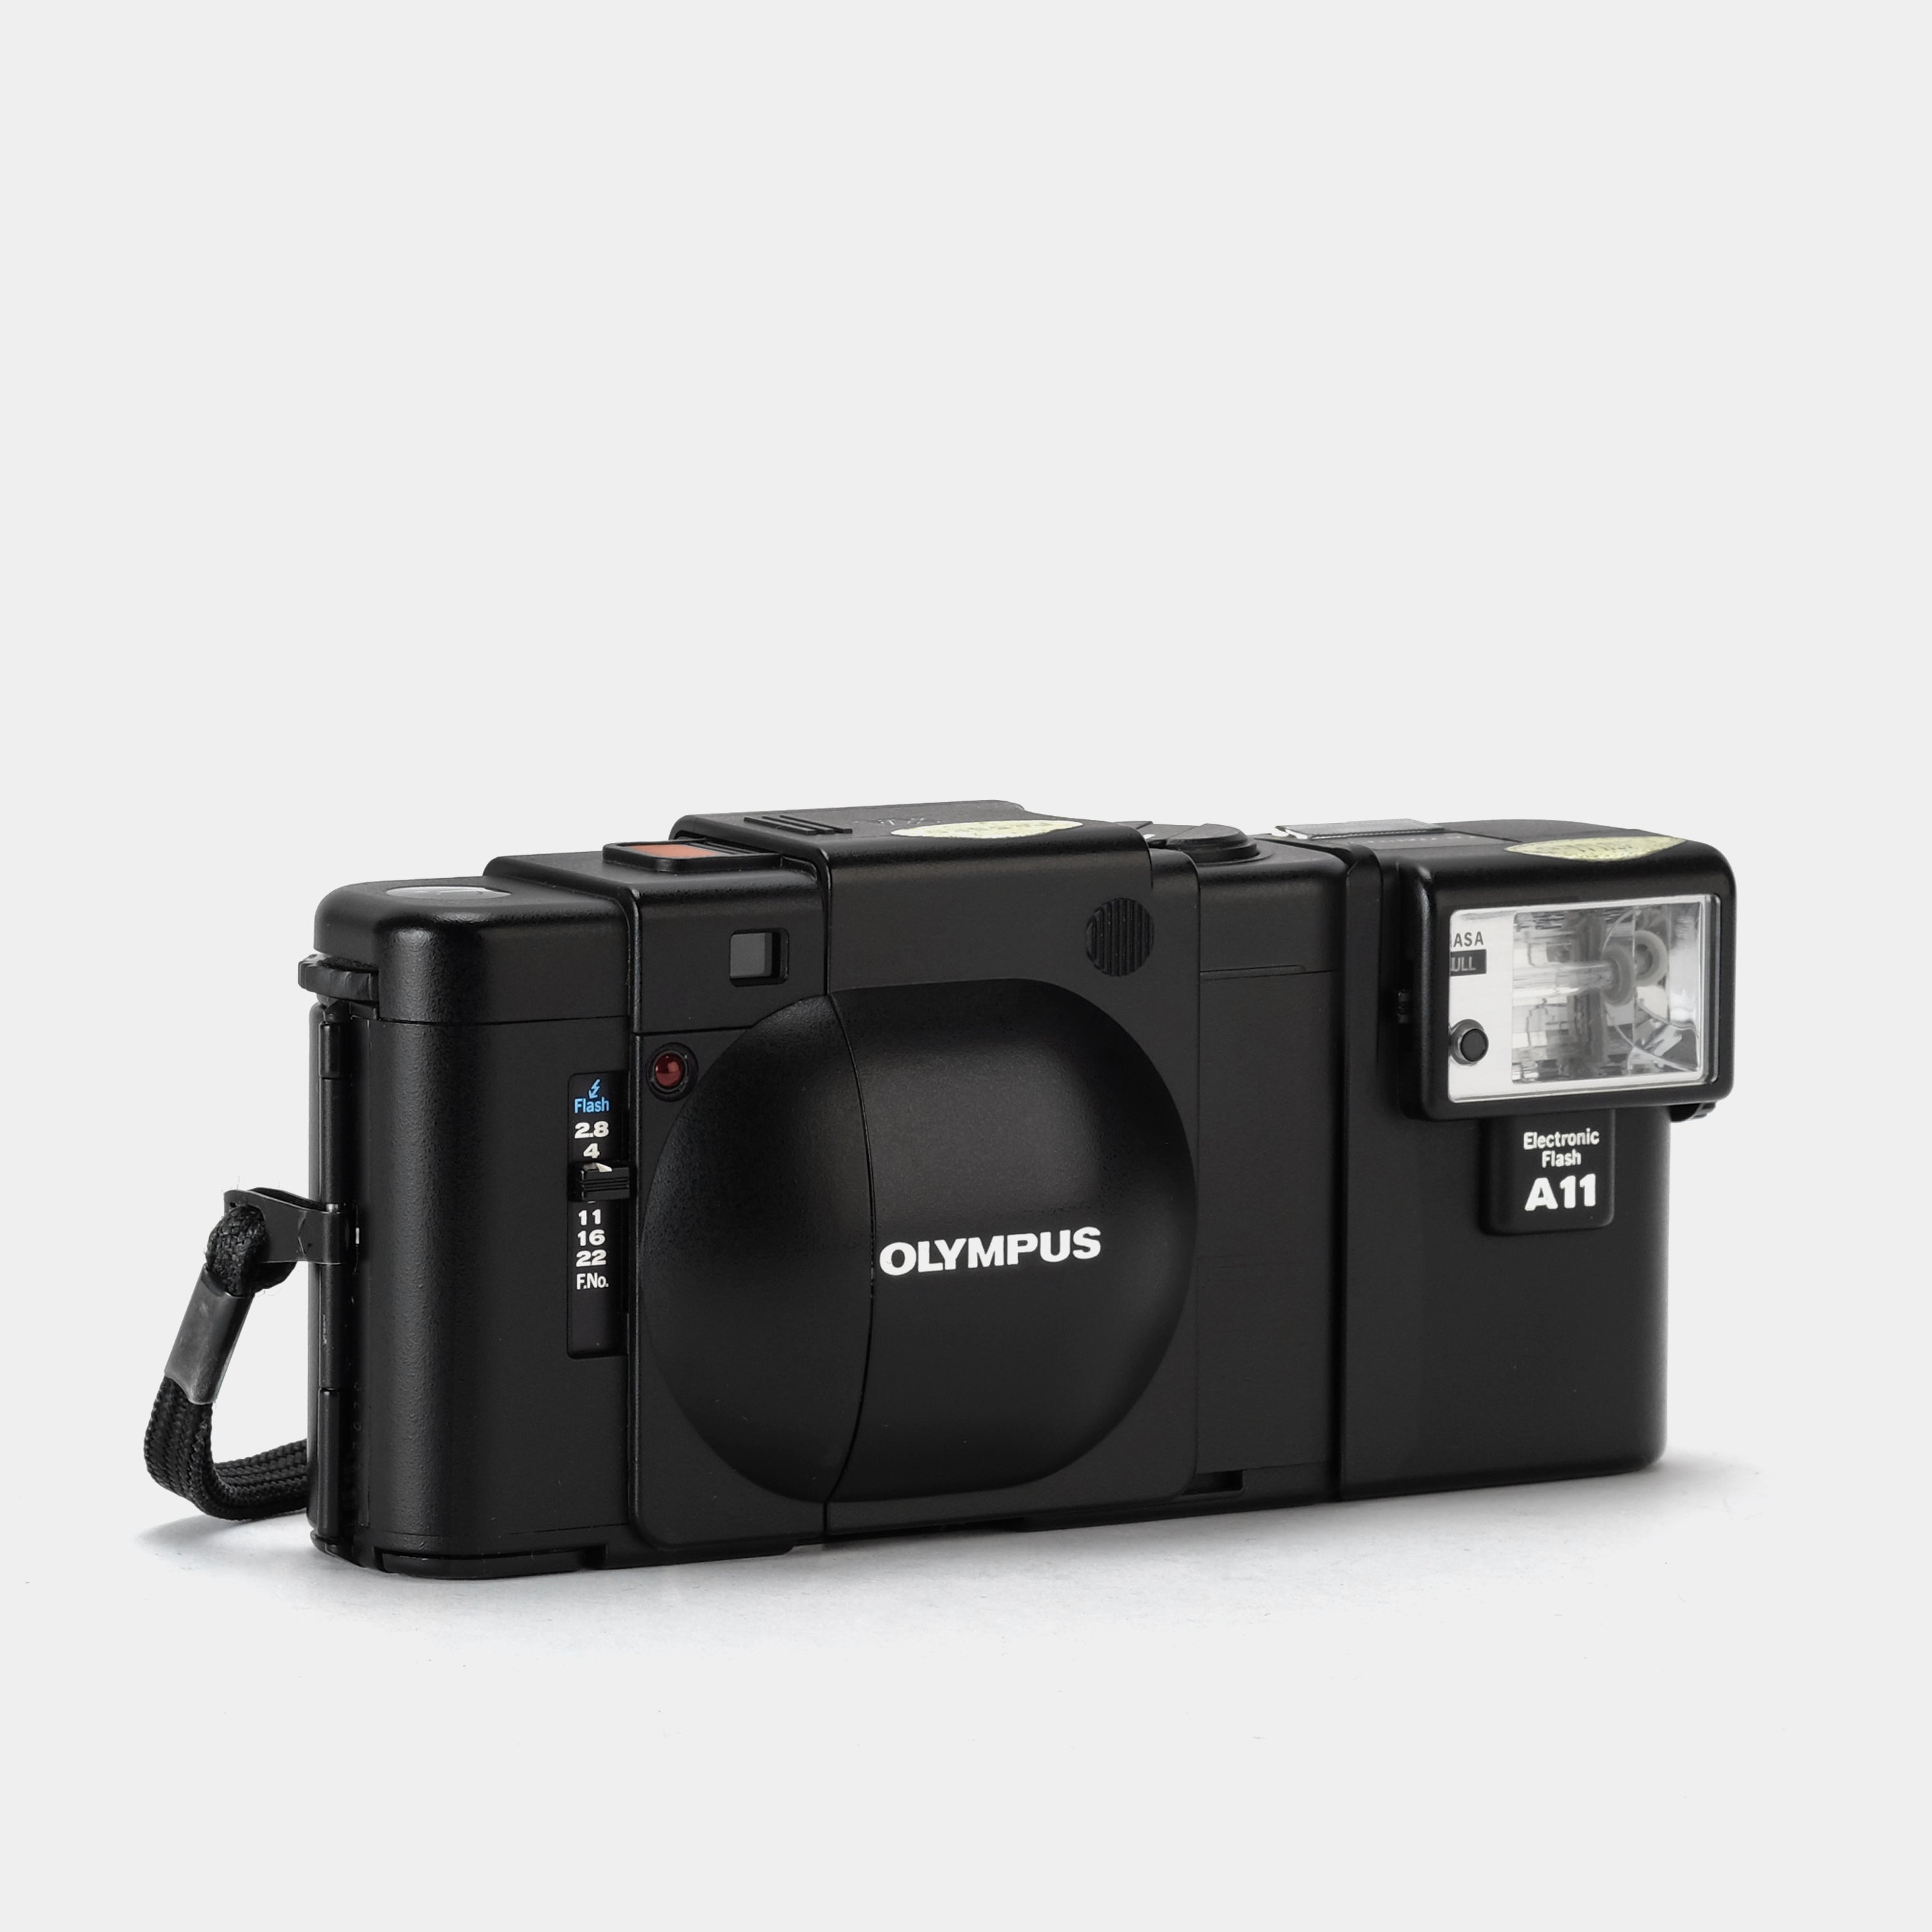 Olympus XA with A11 Flash 35mm Rangefinder Film Camera